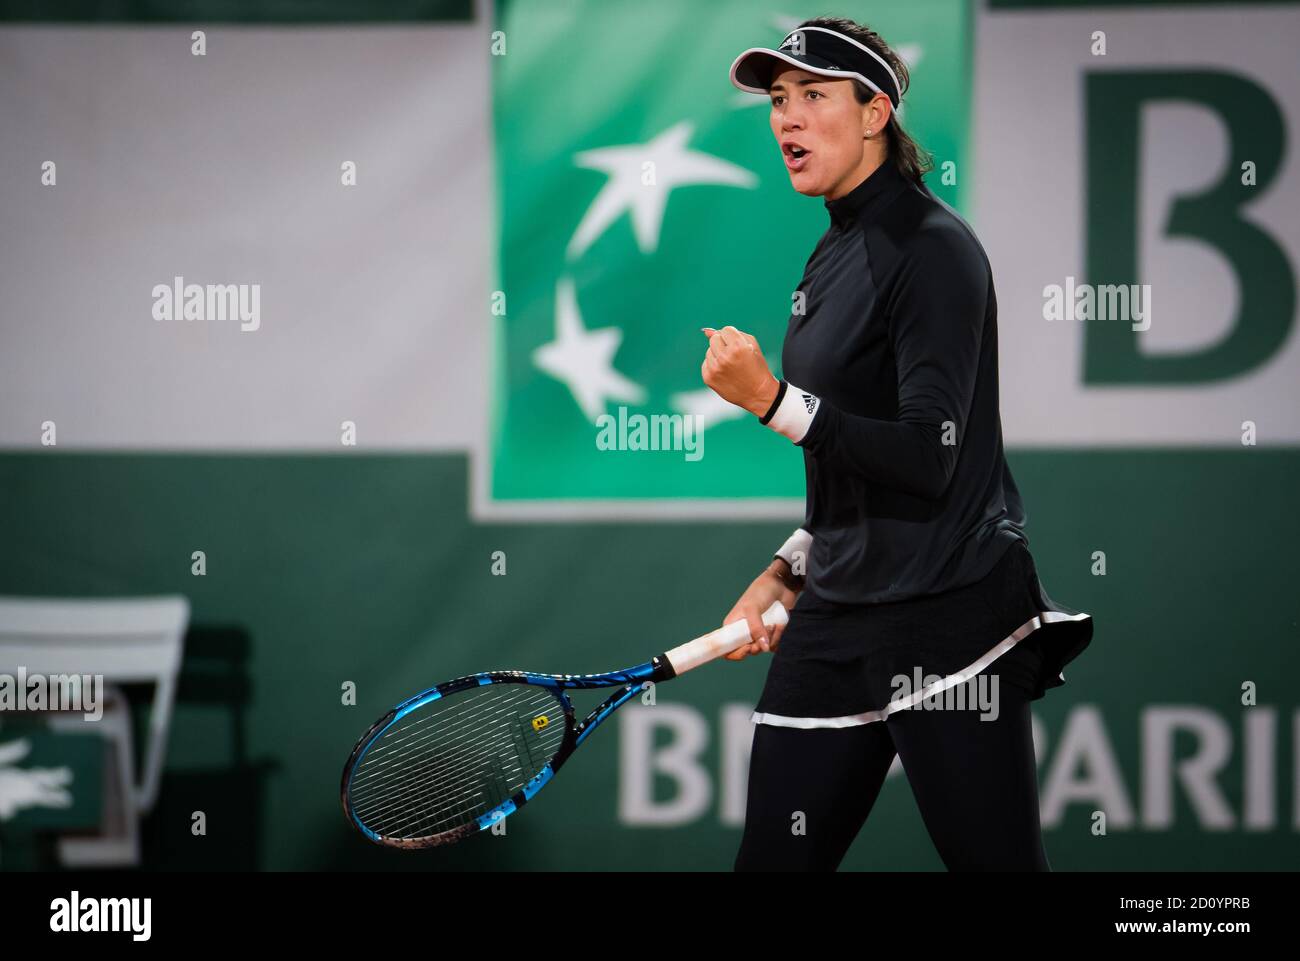 Garbine Muguruza della Spagna in azione contro Danielle Collins degli Stati Uniti durante il terzo round al Roland Garros 2020, Grand Slam tennis Foto Stock